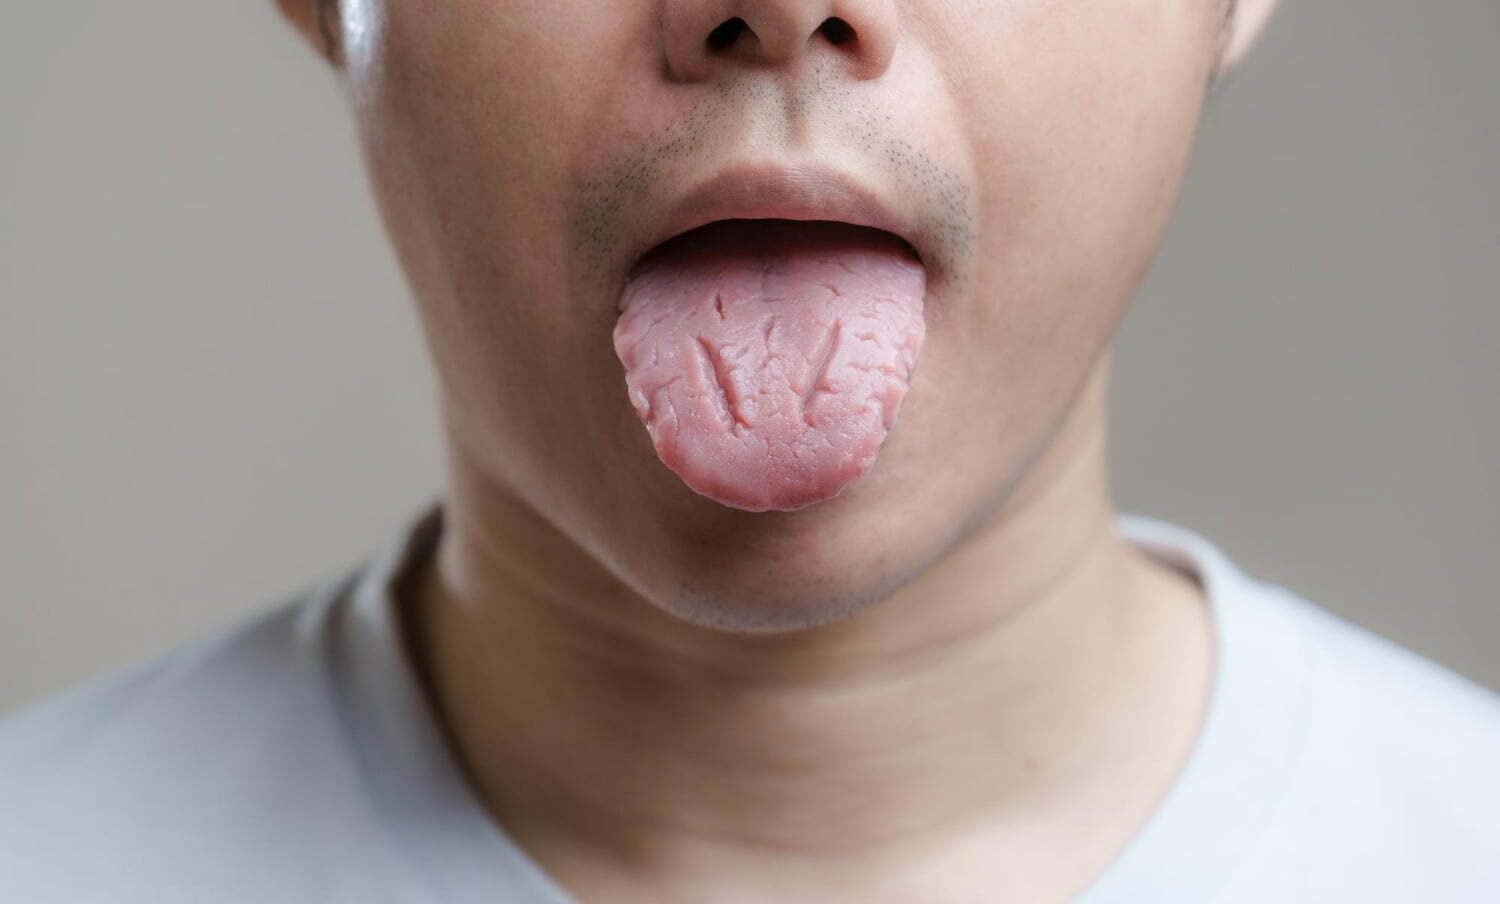 fisuras en la lengua